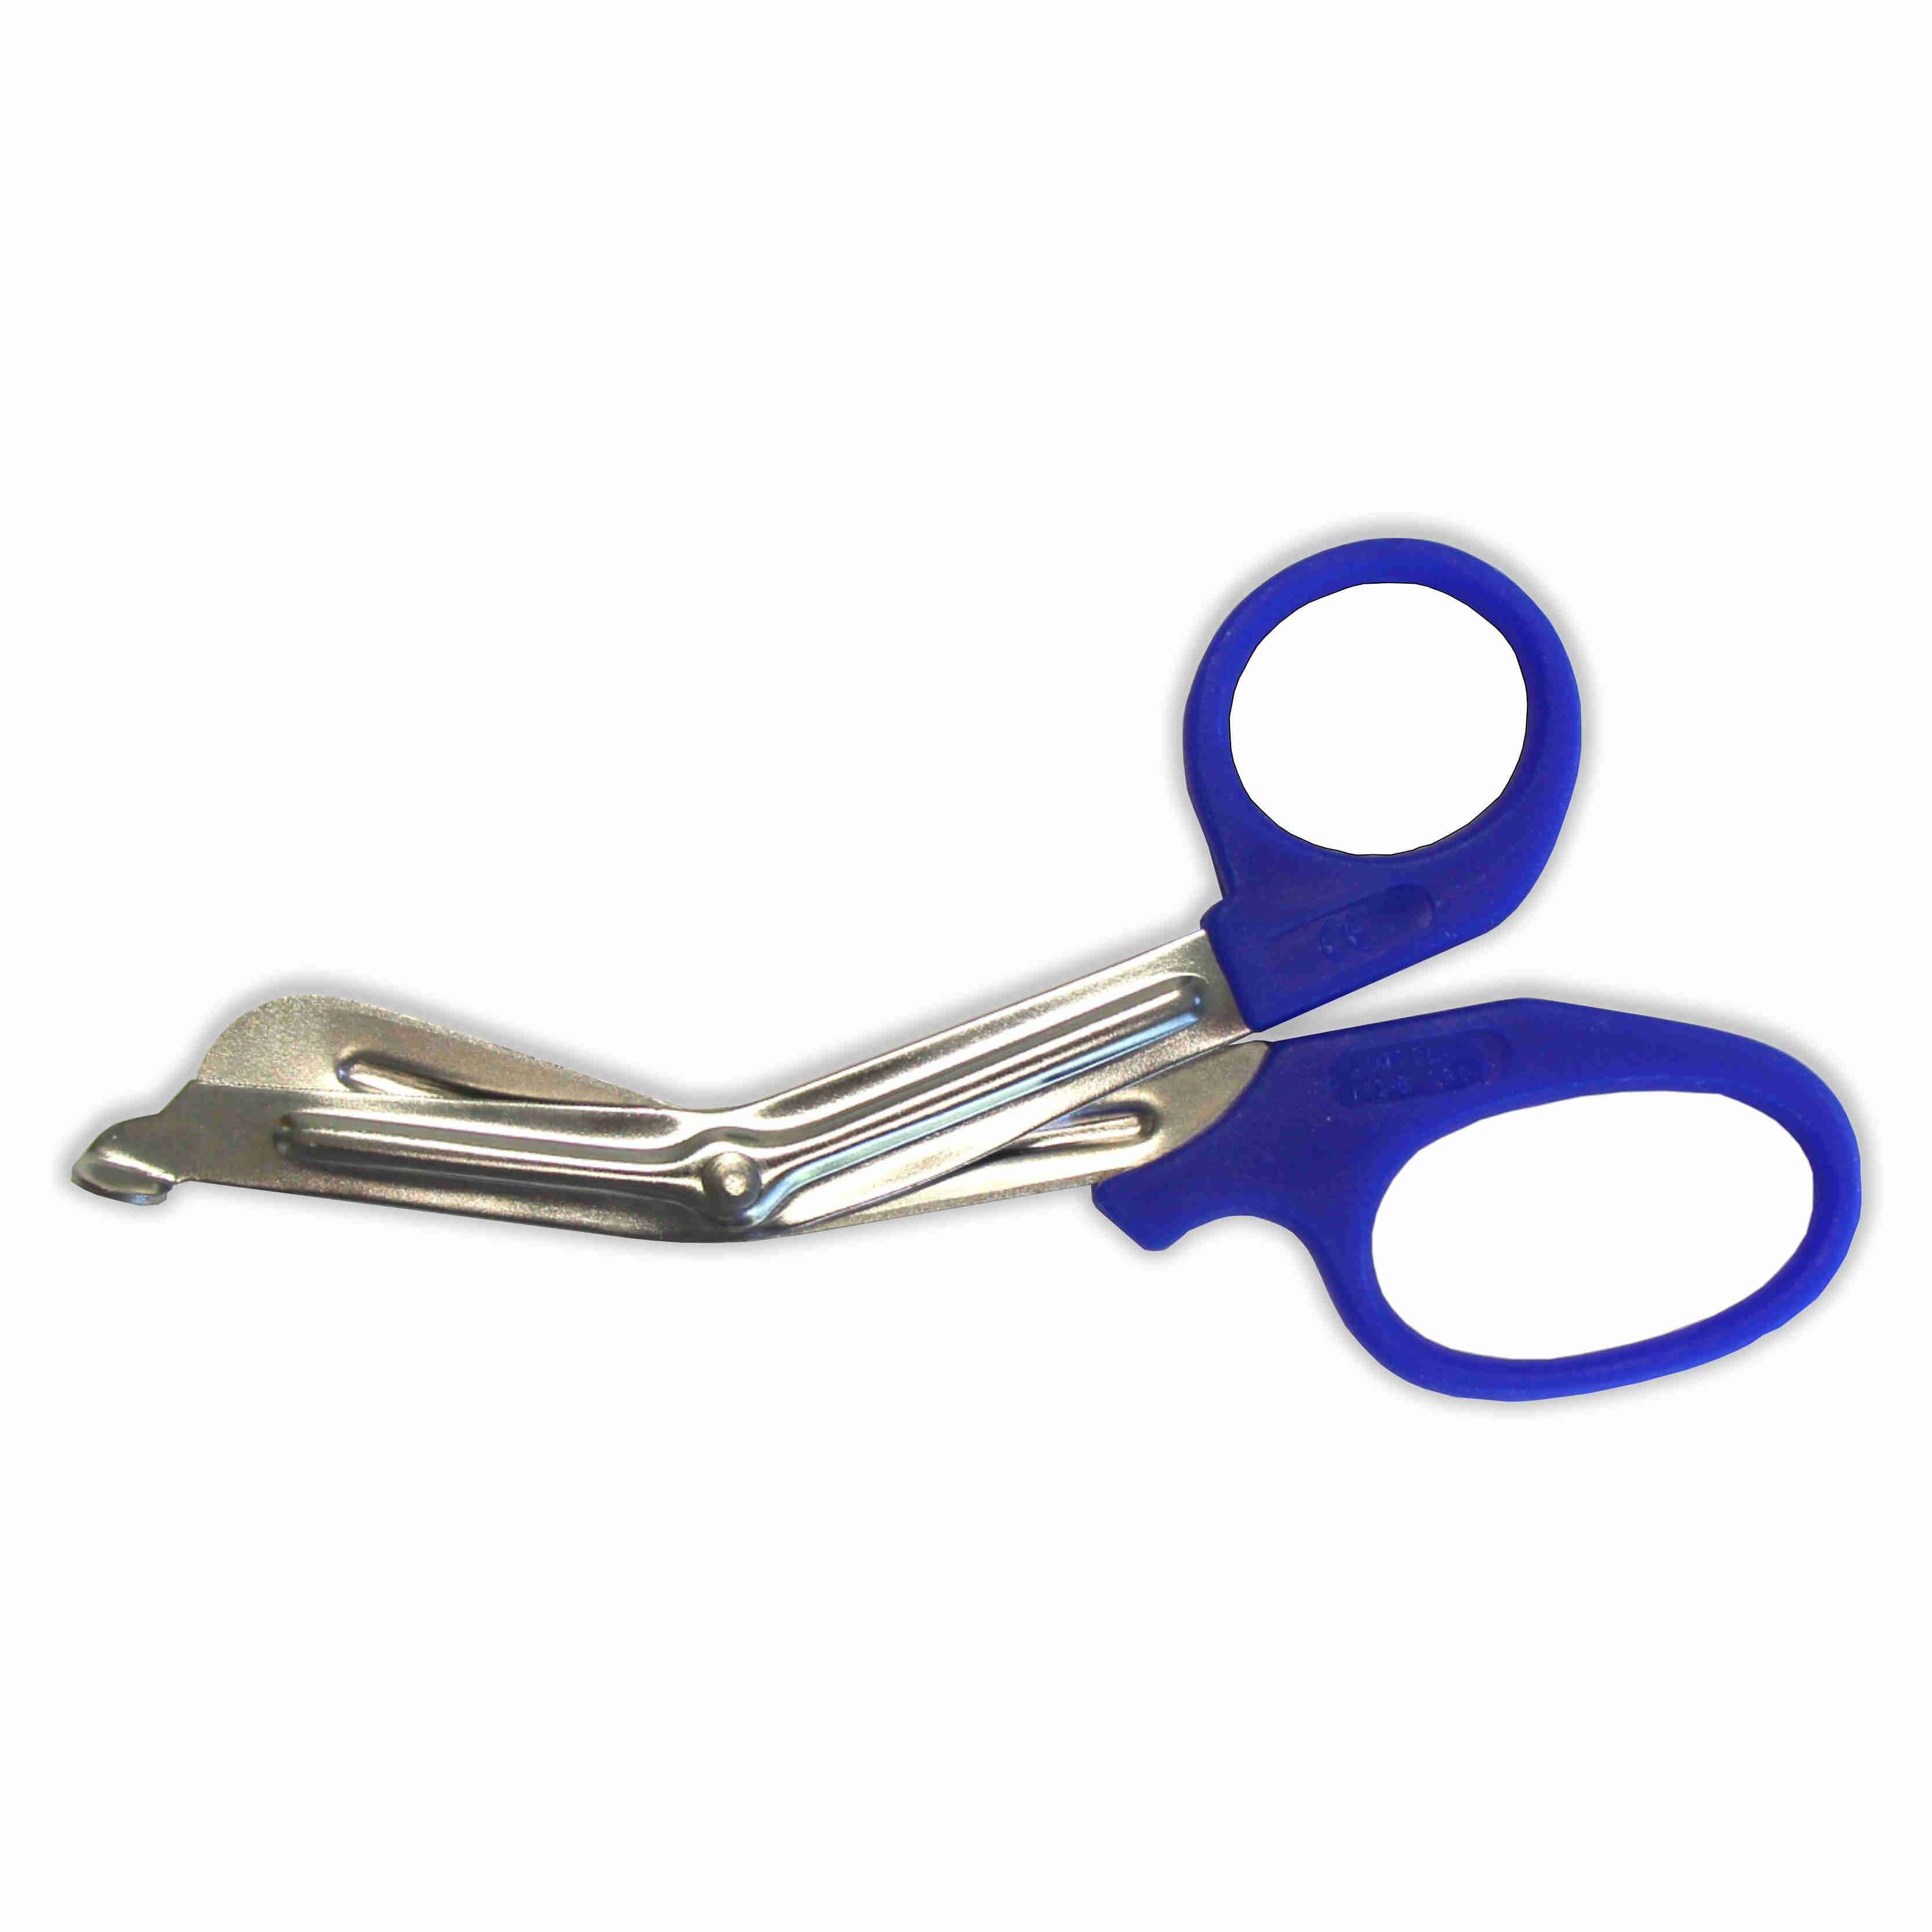 5″ Economy Shears / Scissors – Blue – ScrubGear.com